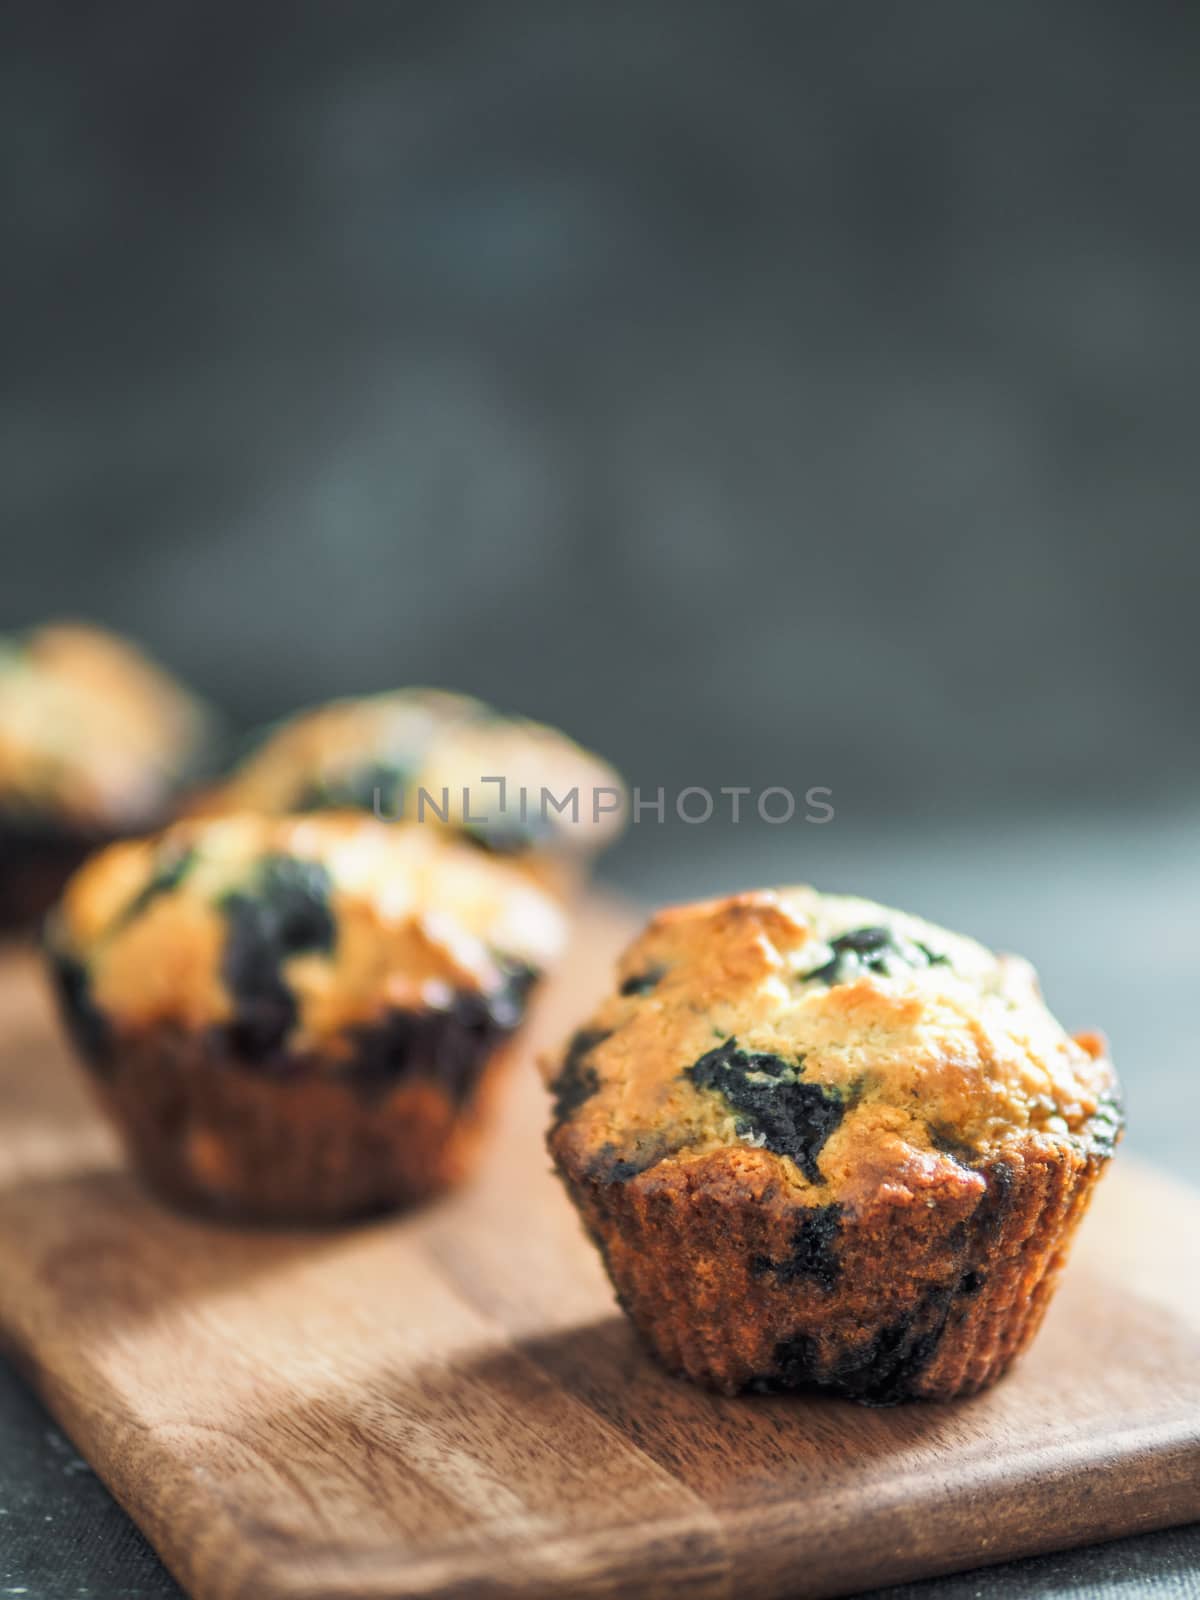 Homemade blueberry muffins on dark background. by fascinadora